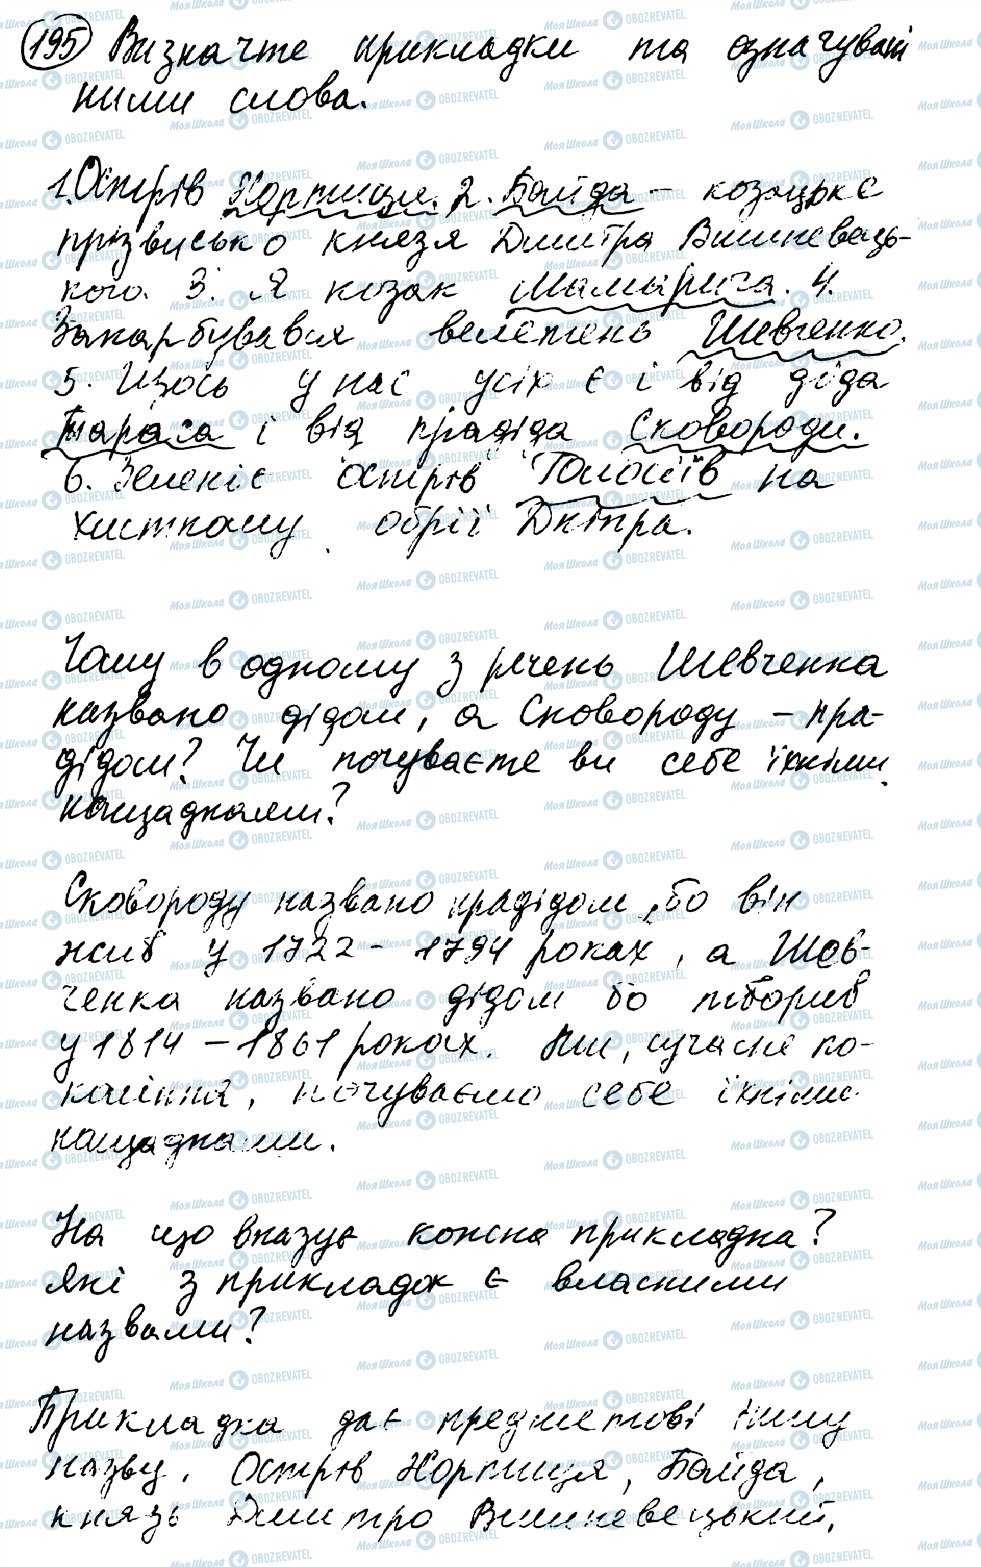 ГДЗ Українська мова 8 клас сторінка 195